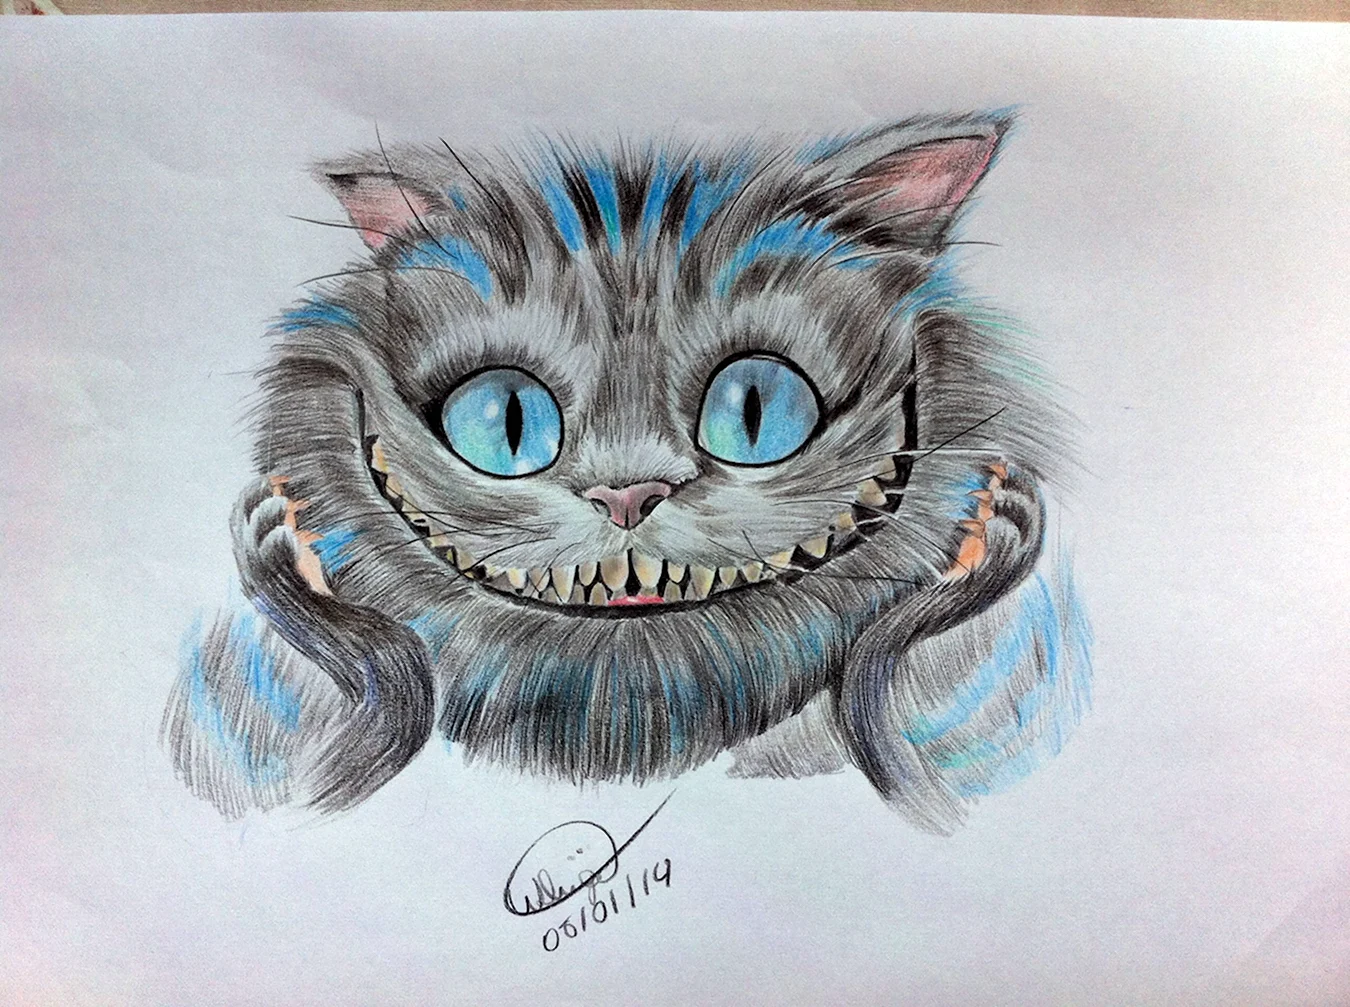 Чеширский кот из Алисы в стране чудес рисунки карандашом. Для срисовки